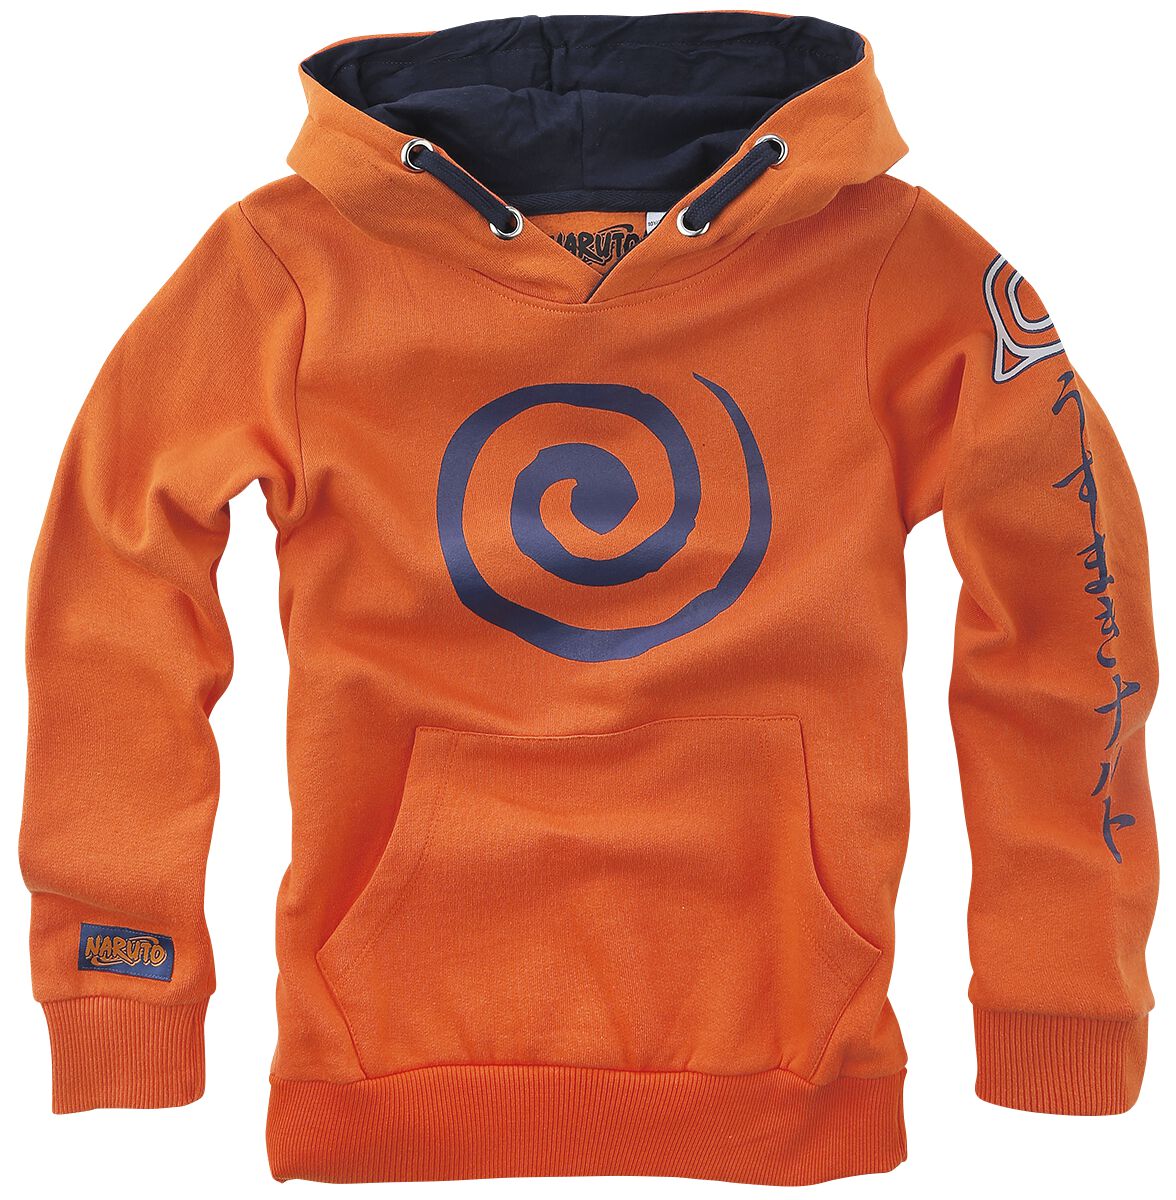 Naruto - Anime Kapuzenpullover - Kids - Sign - 116 bis 164 - Größe 128 - orange  - EMP exklusives Merchandise!